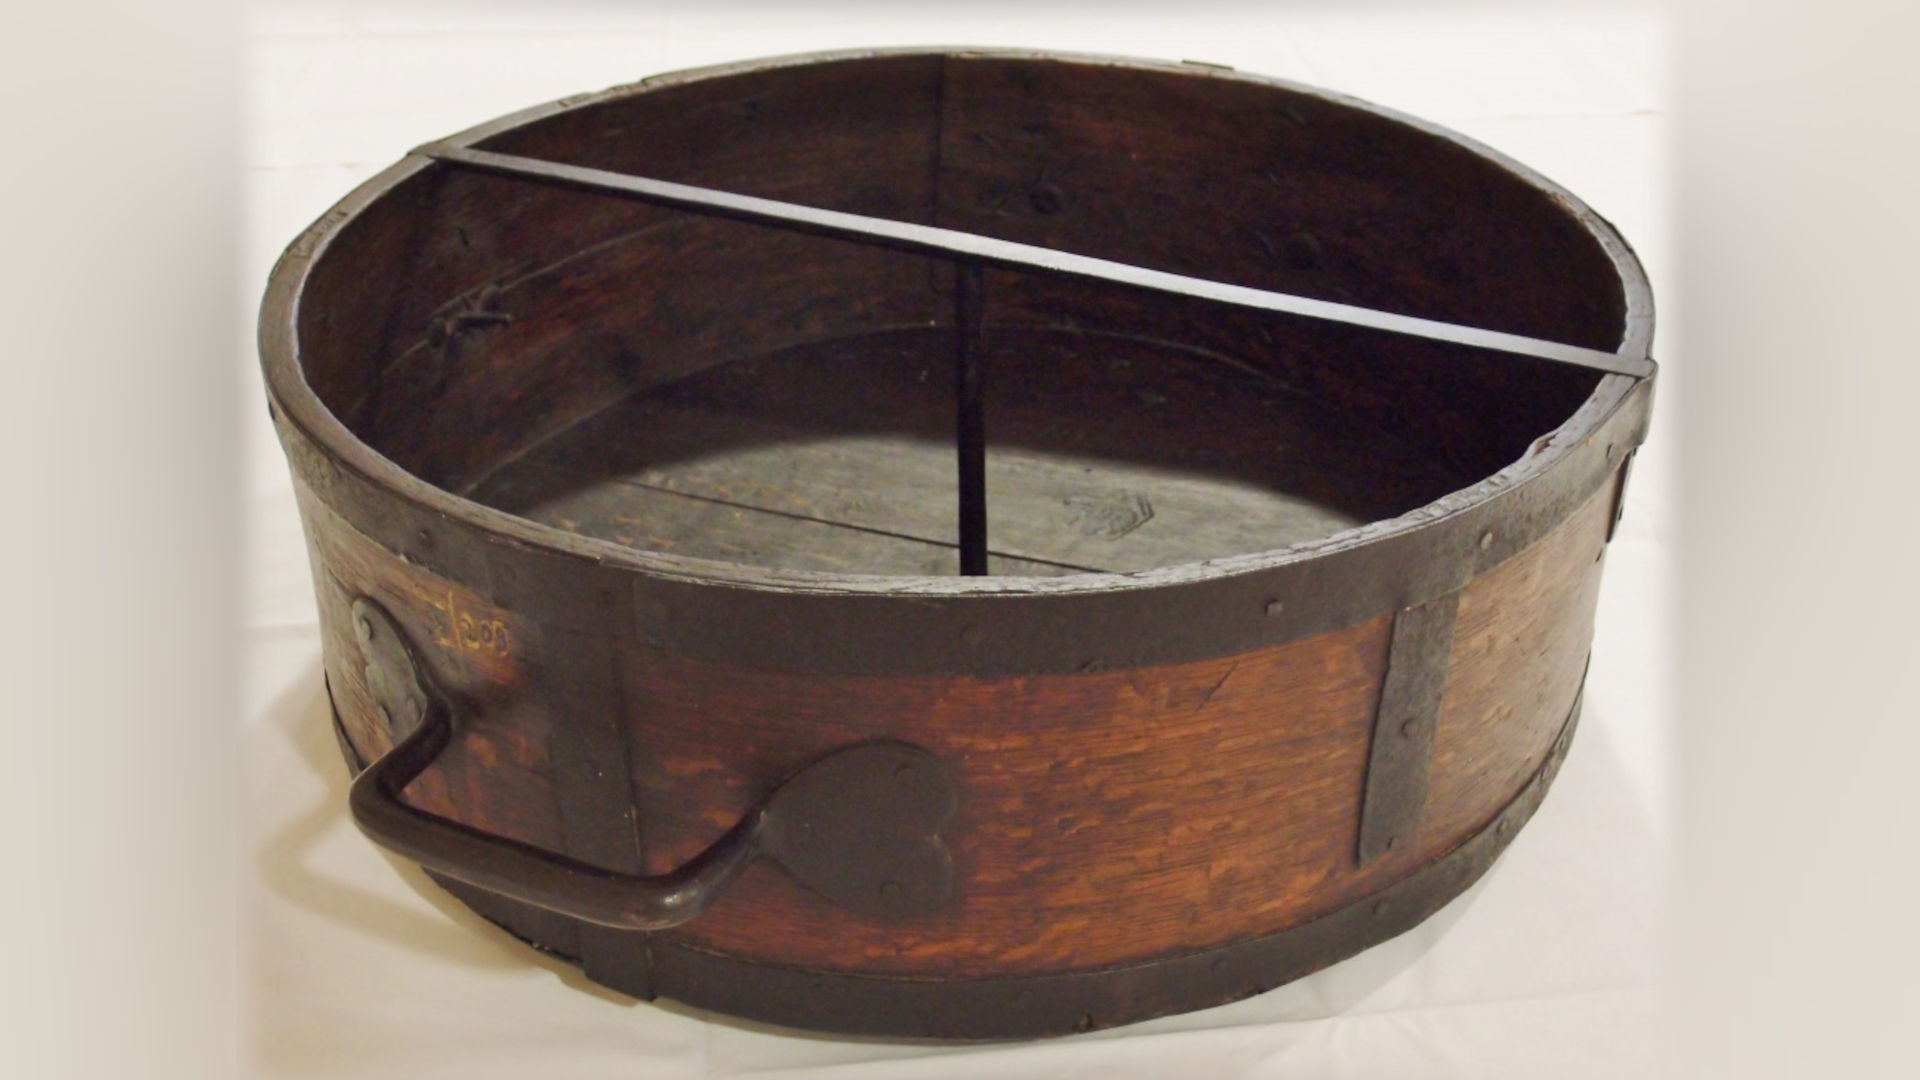 Foto: großes rundes Holzgefäß mit Metallbeschlägen.